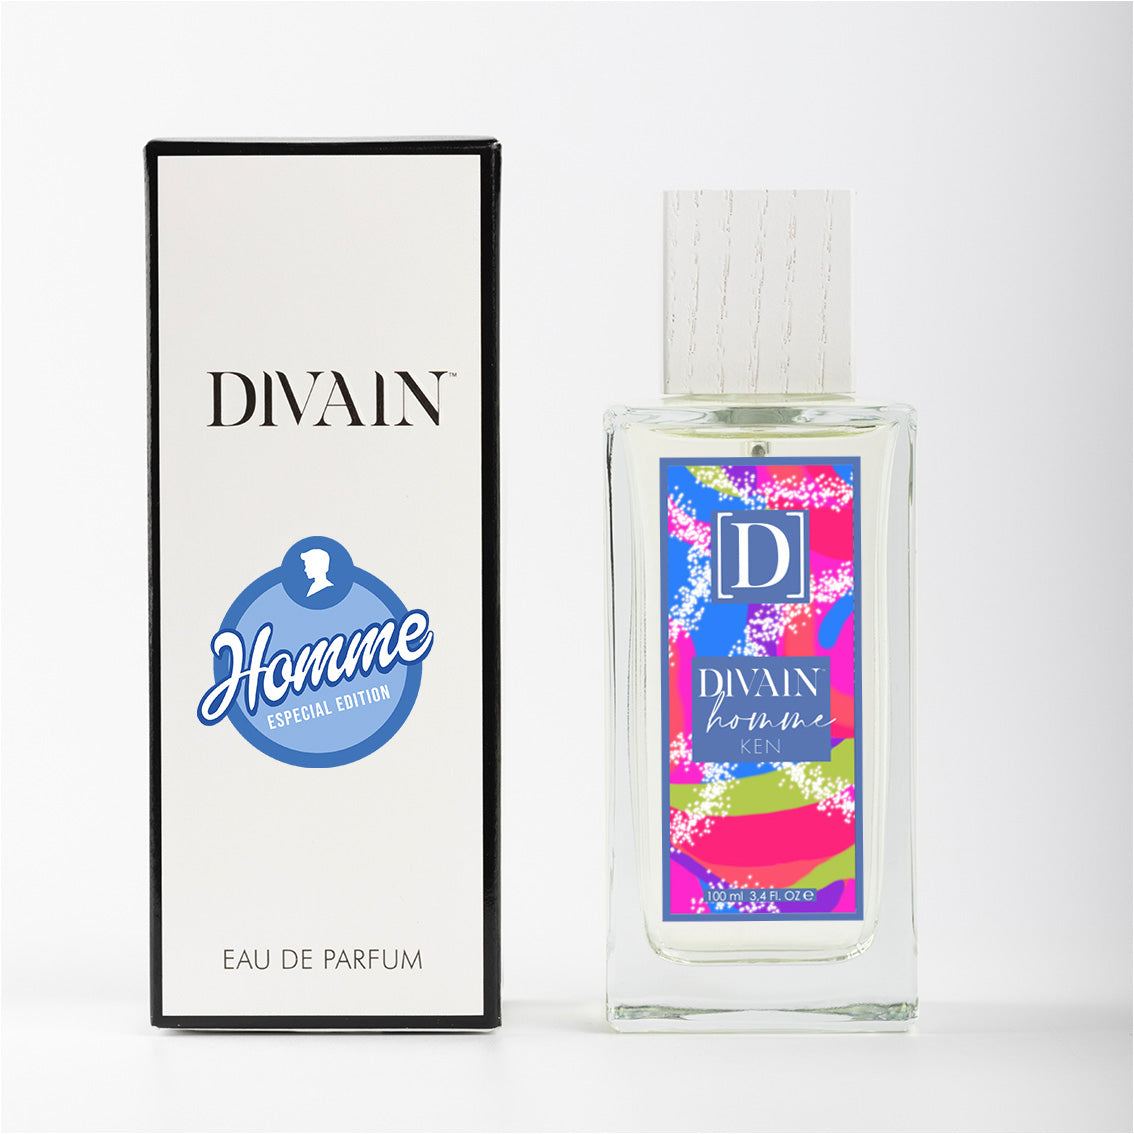 DIVAIN-324, Similar a L'immensité de Louis Vuitton